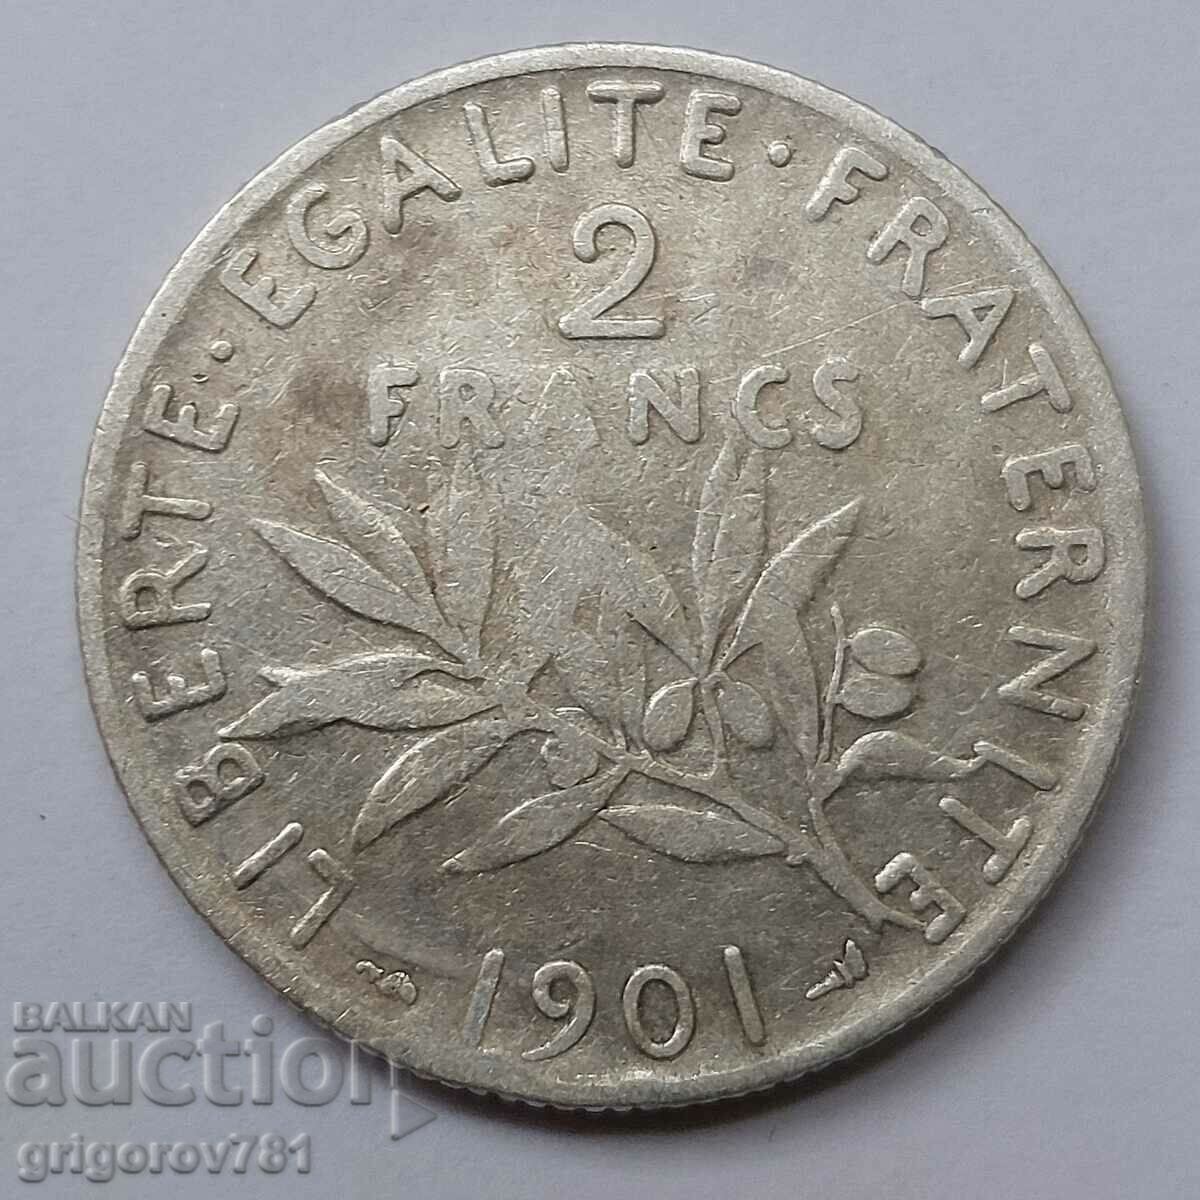 2 Franci Argint Franta 1901 - Moneda de argint #40